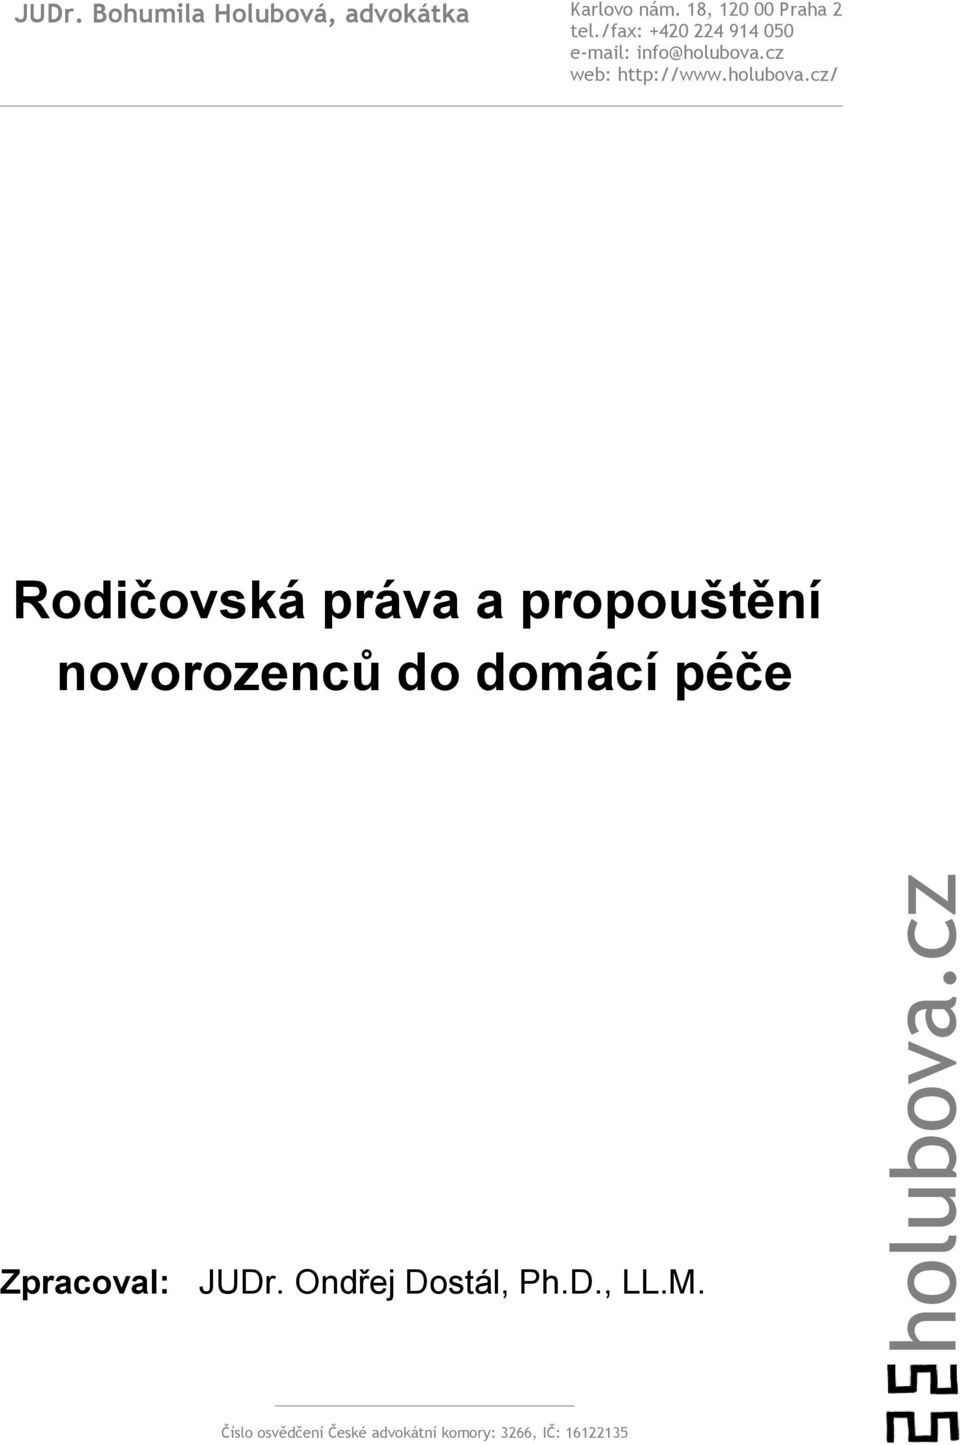 cz web: http://www.holubova.